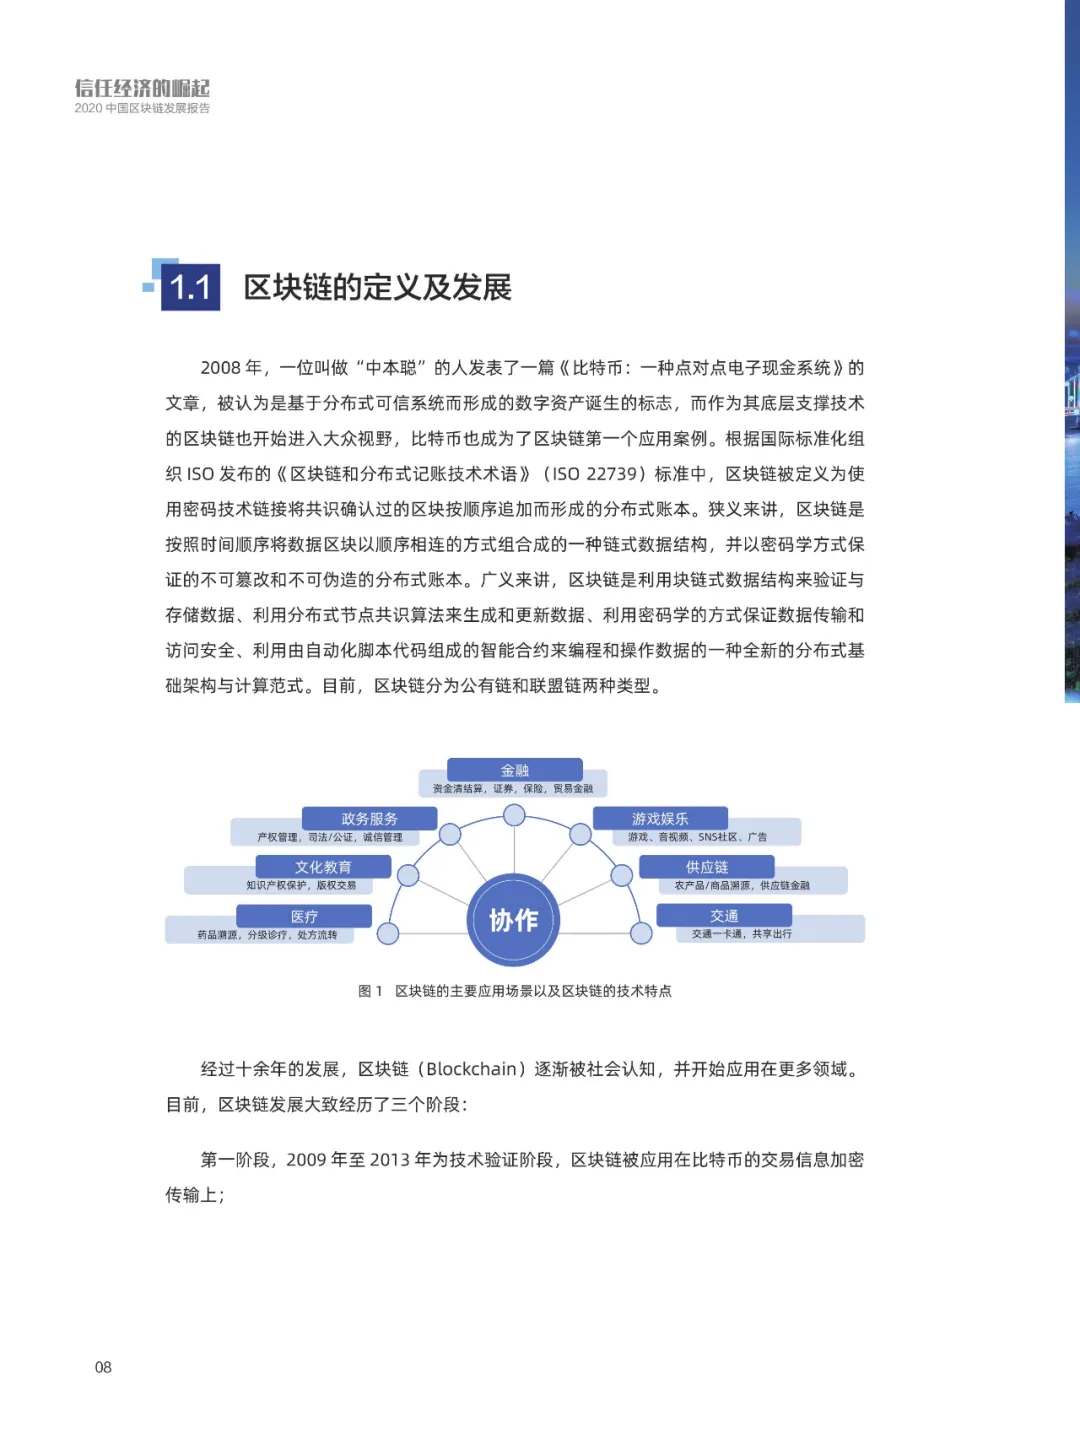 信任经济的崛起——2020中国区块链发展报告_区块链_10